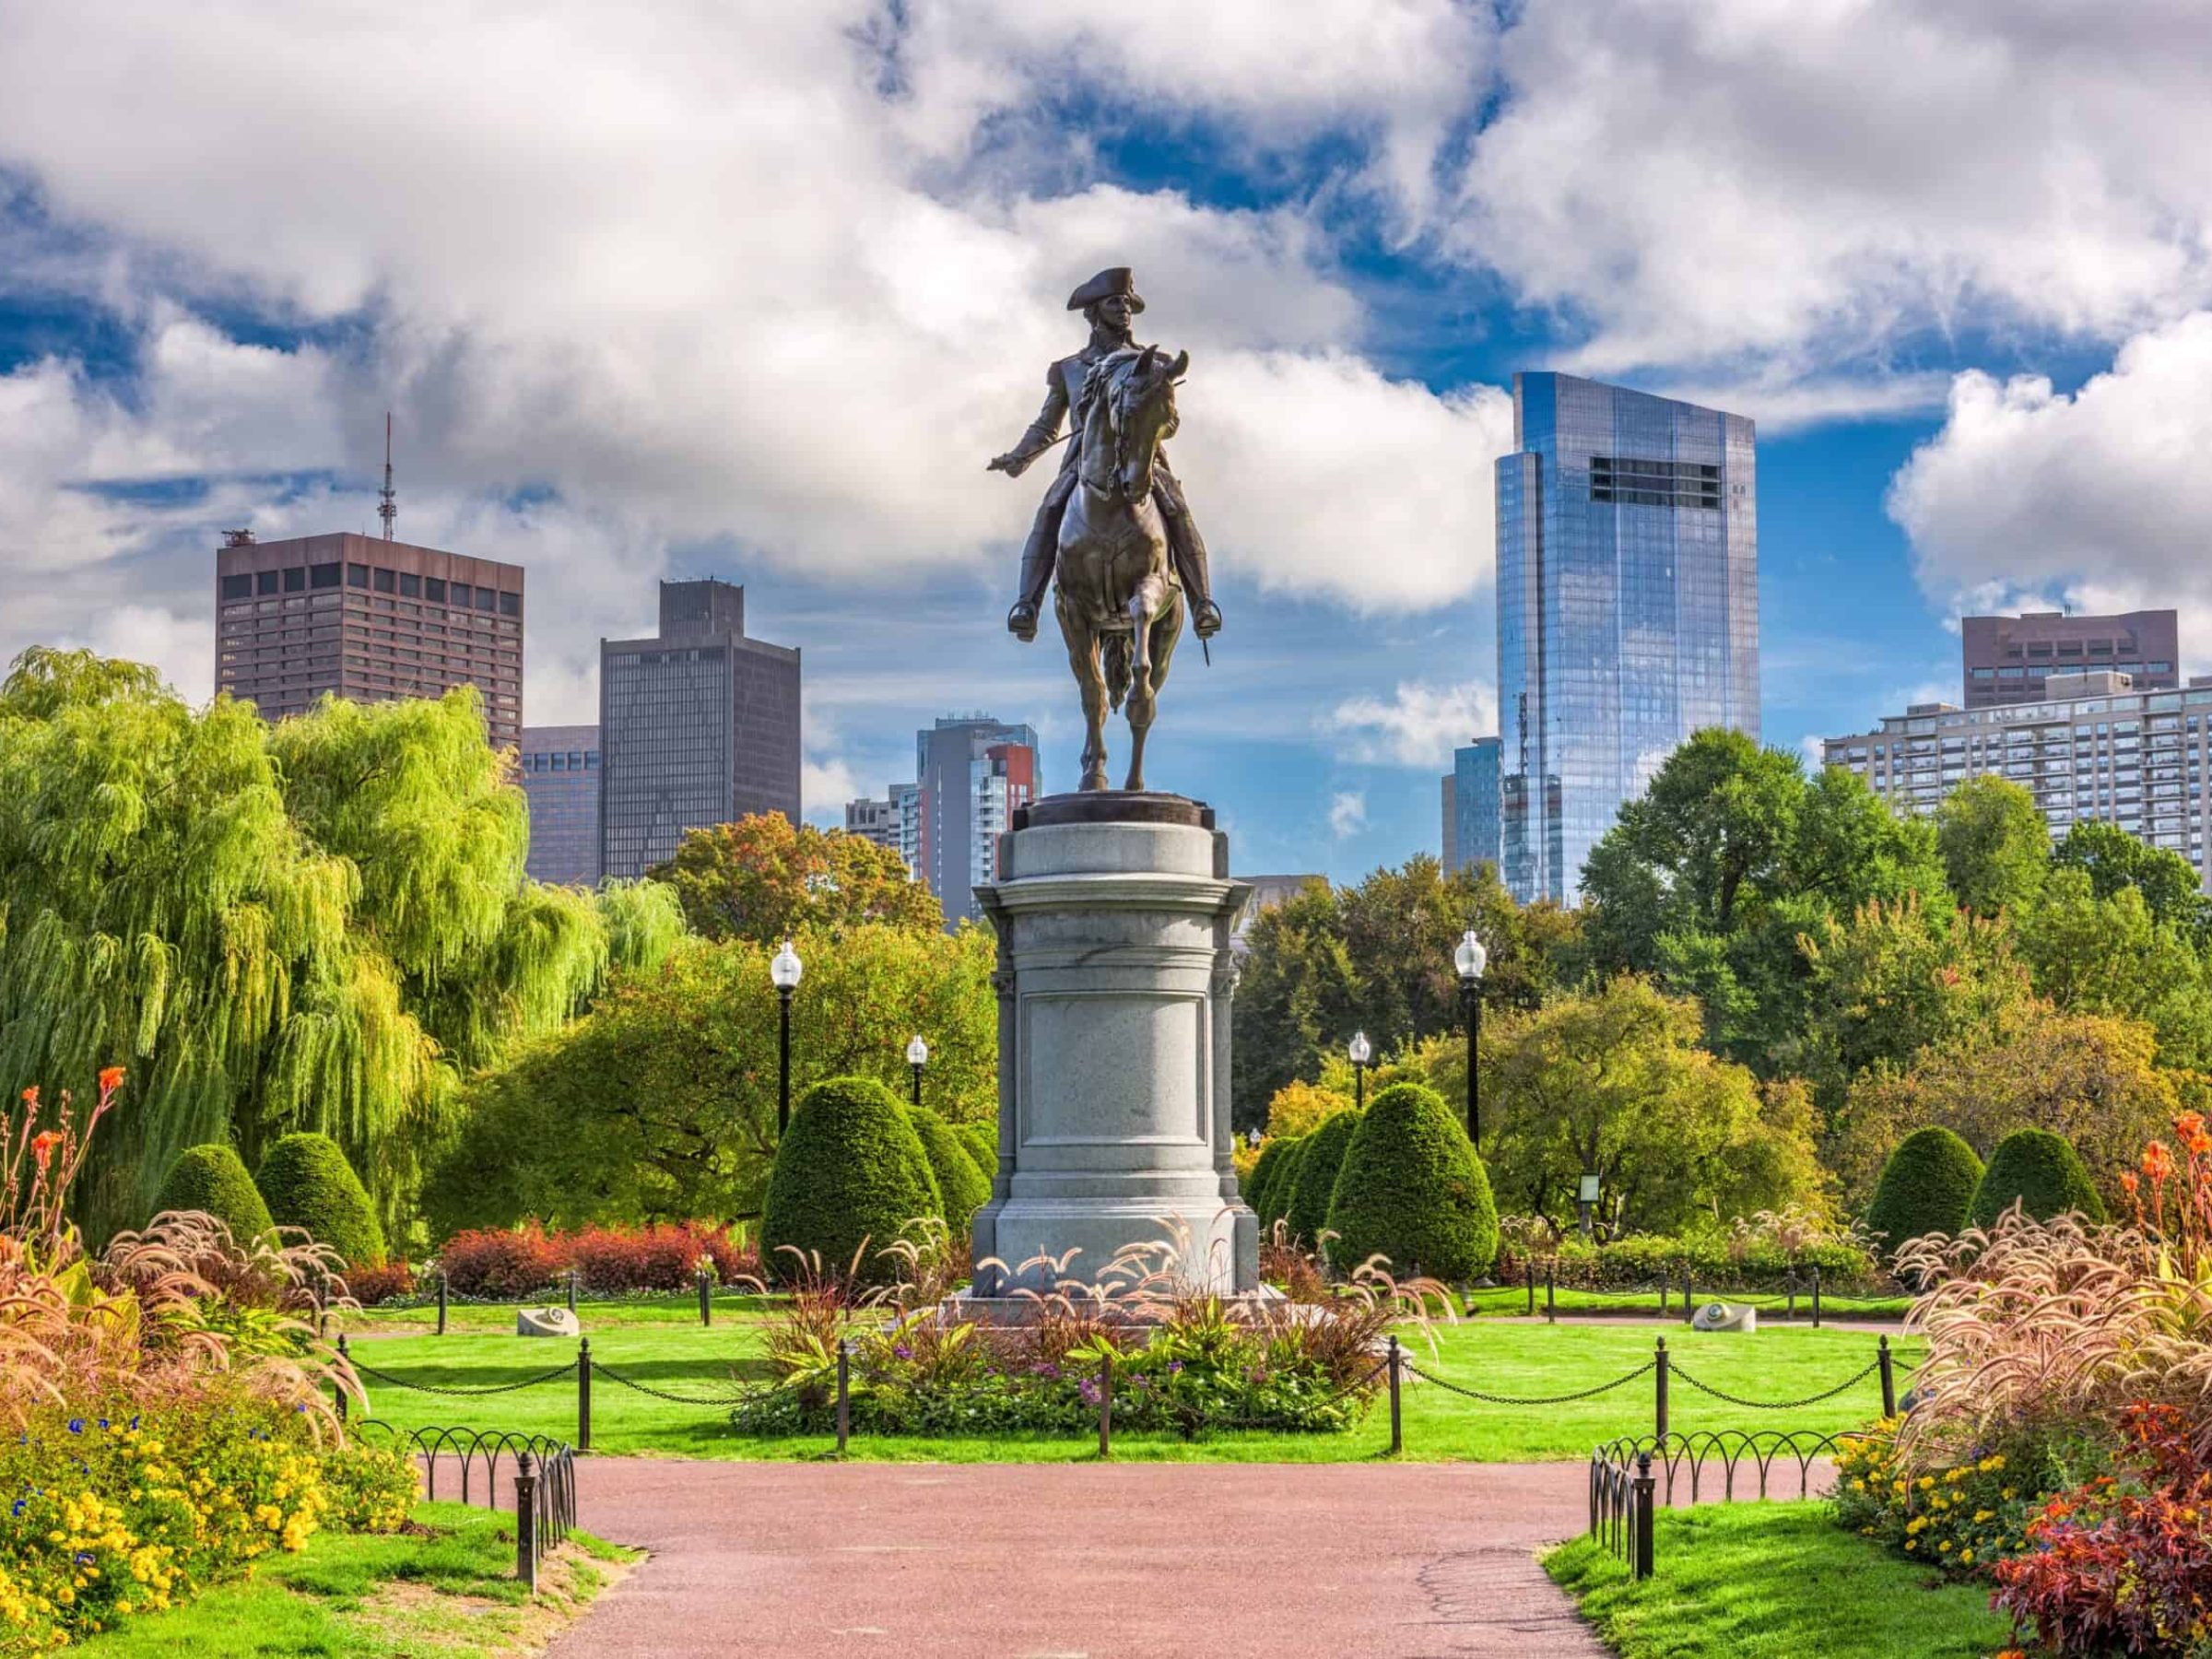 George Washington Monument at Public Garden in Boston, Massachusetts.